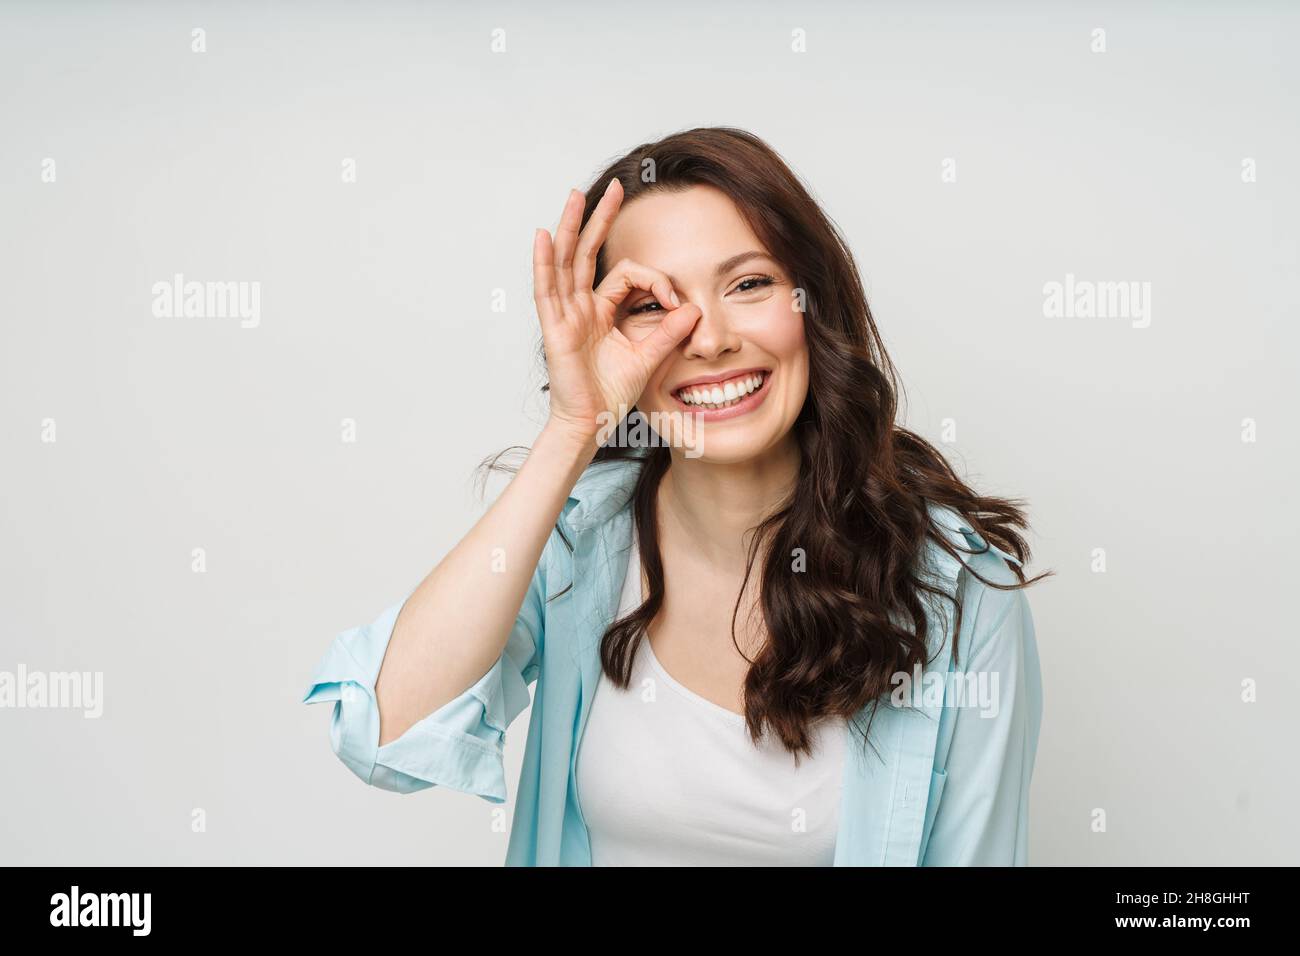 Porträt einer lächelnden Frau, die ein OK-Zeichen zeigt und in eine isolierte Kamera auf weißem Hintergrund blickt. Stockfoto